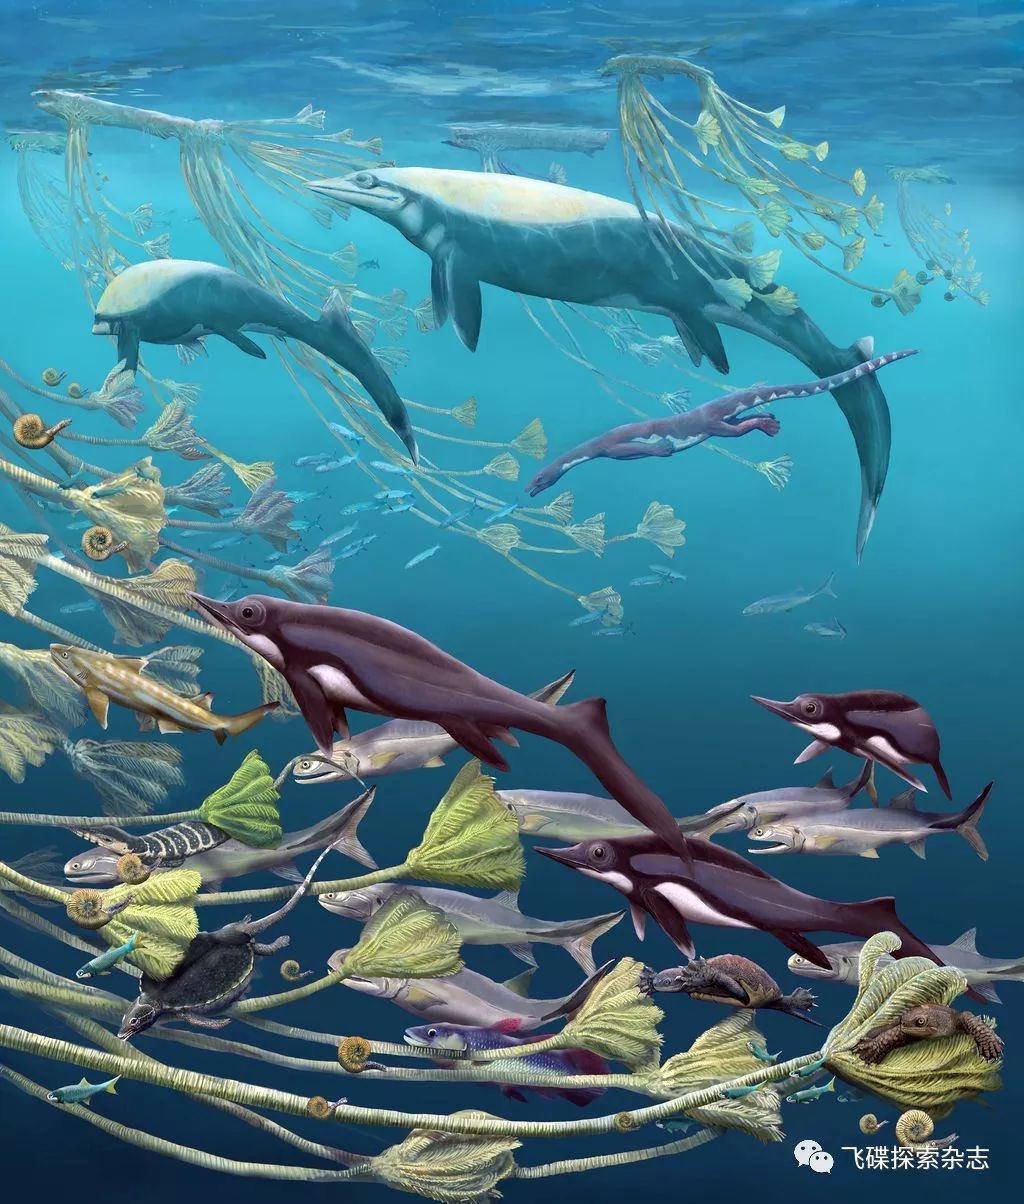 巢湖鱼龙动物群的新发现与三叠纪生物复苏